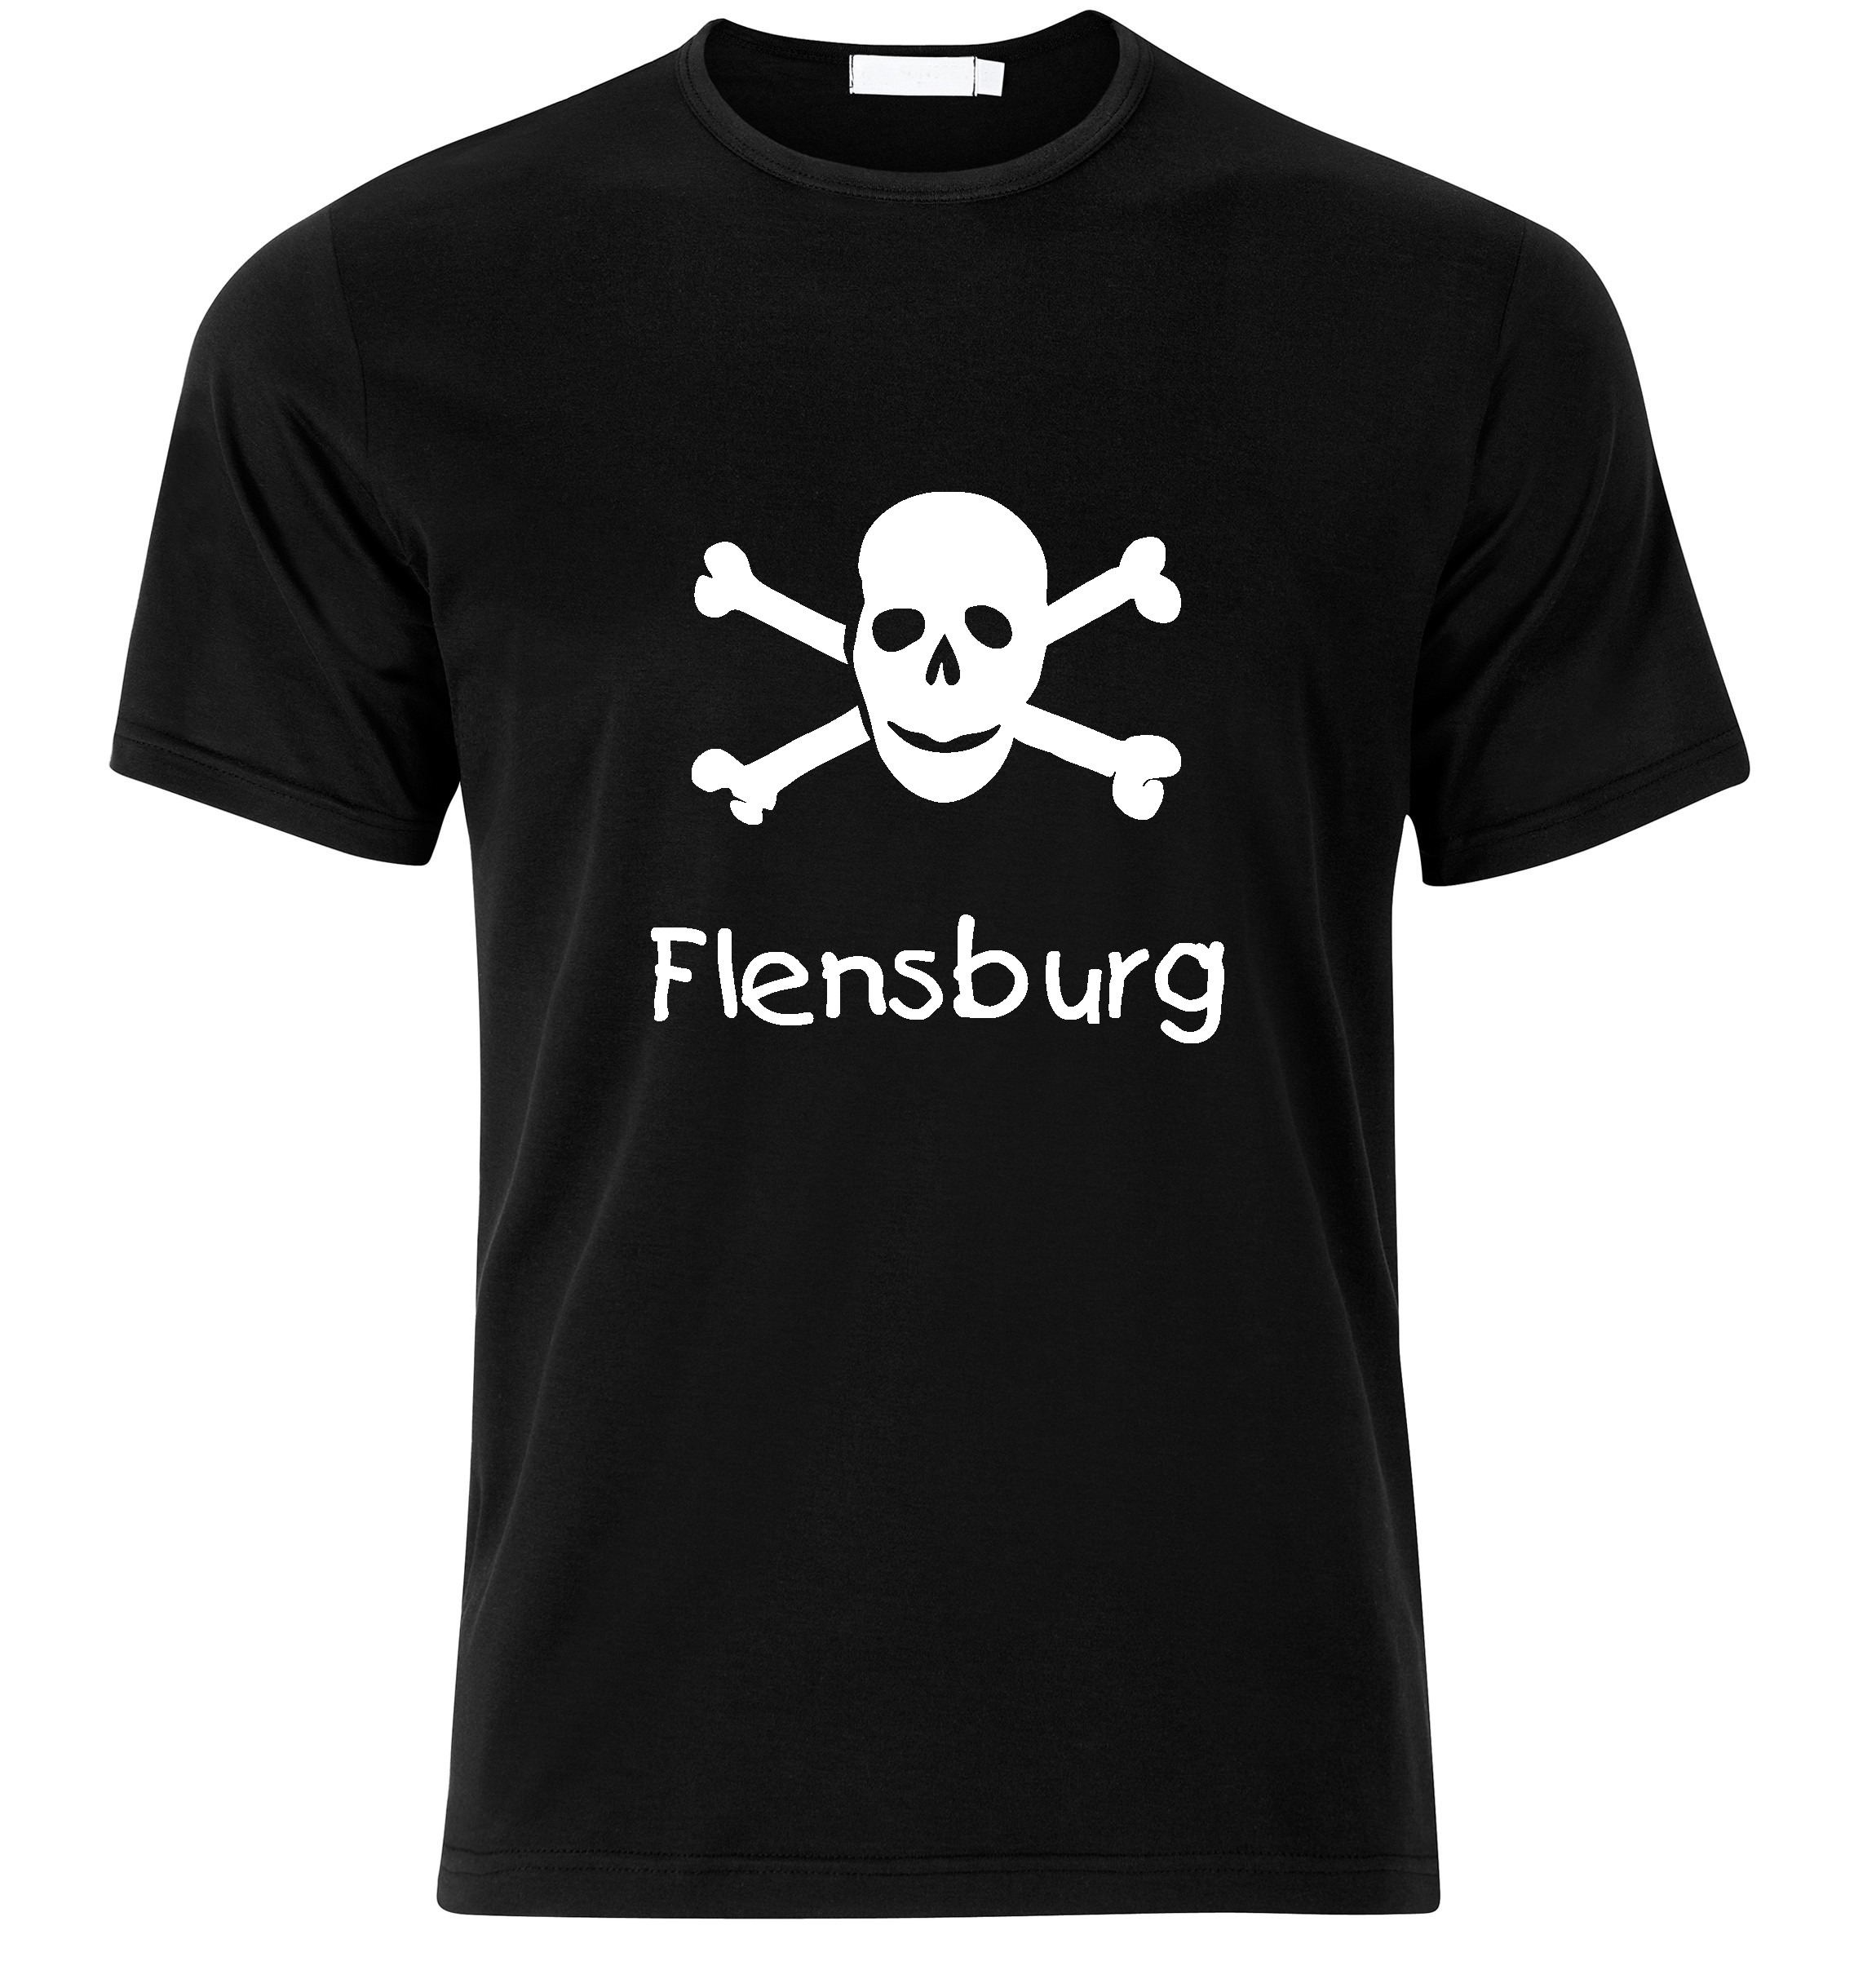 T-Shirt Flensburg Jolly Roger, Totenkopf